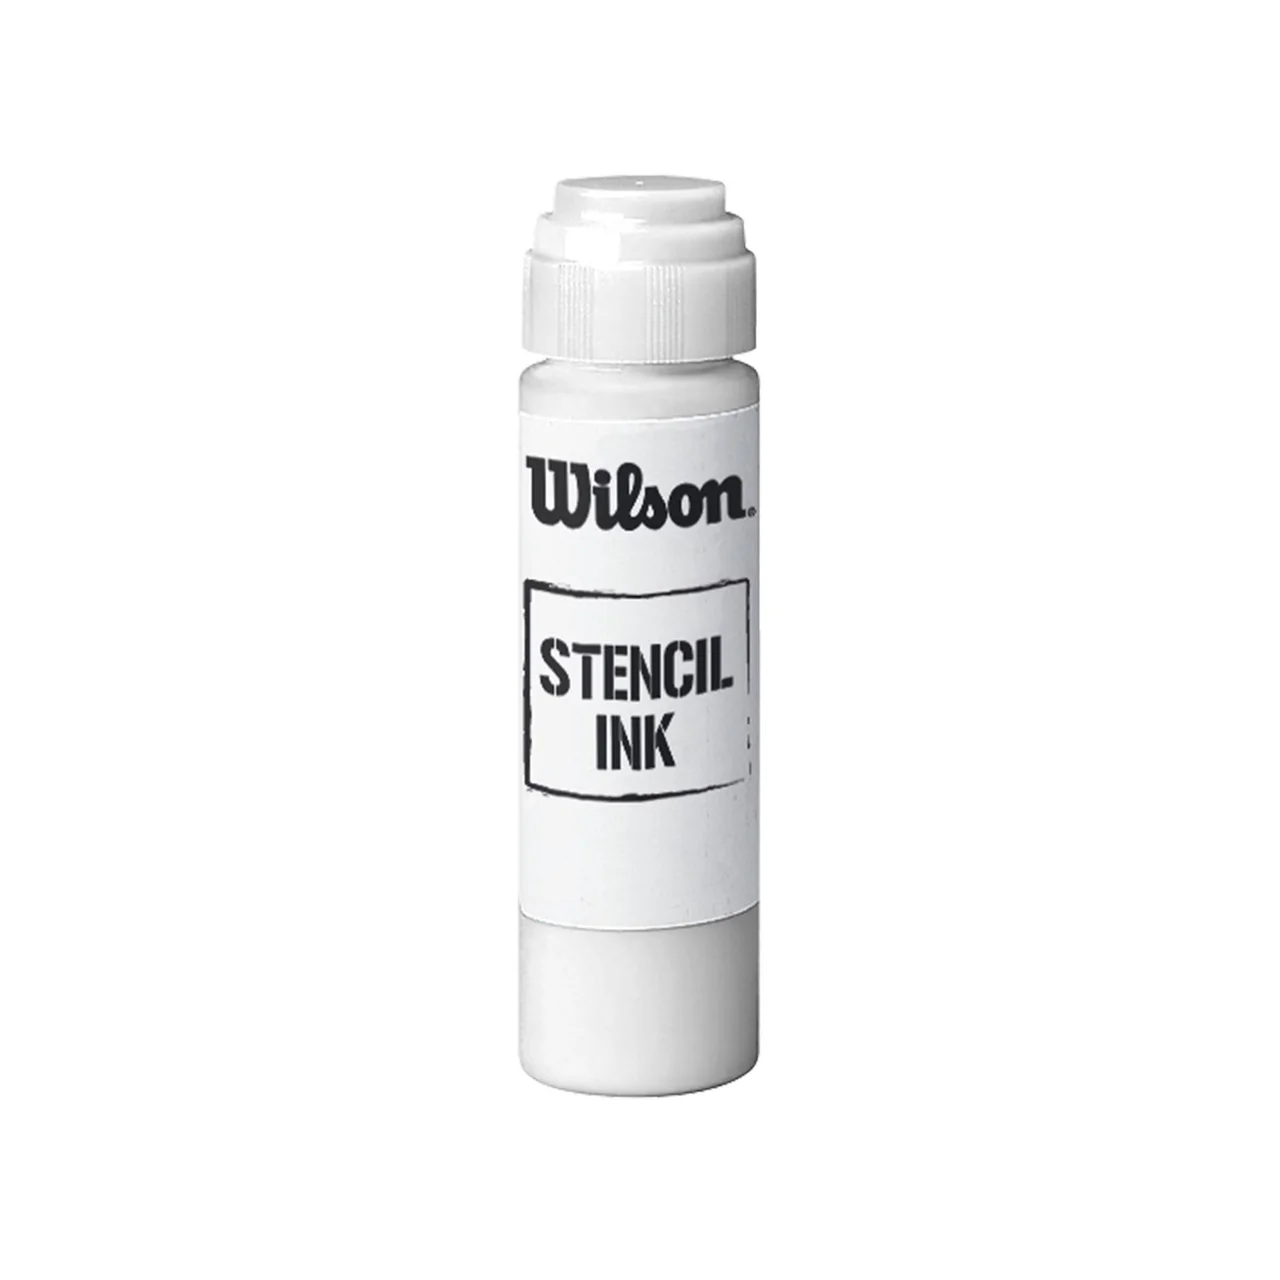 Wilson Stencil Ink Red/White/Black